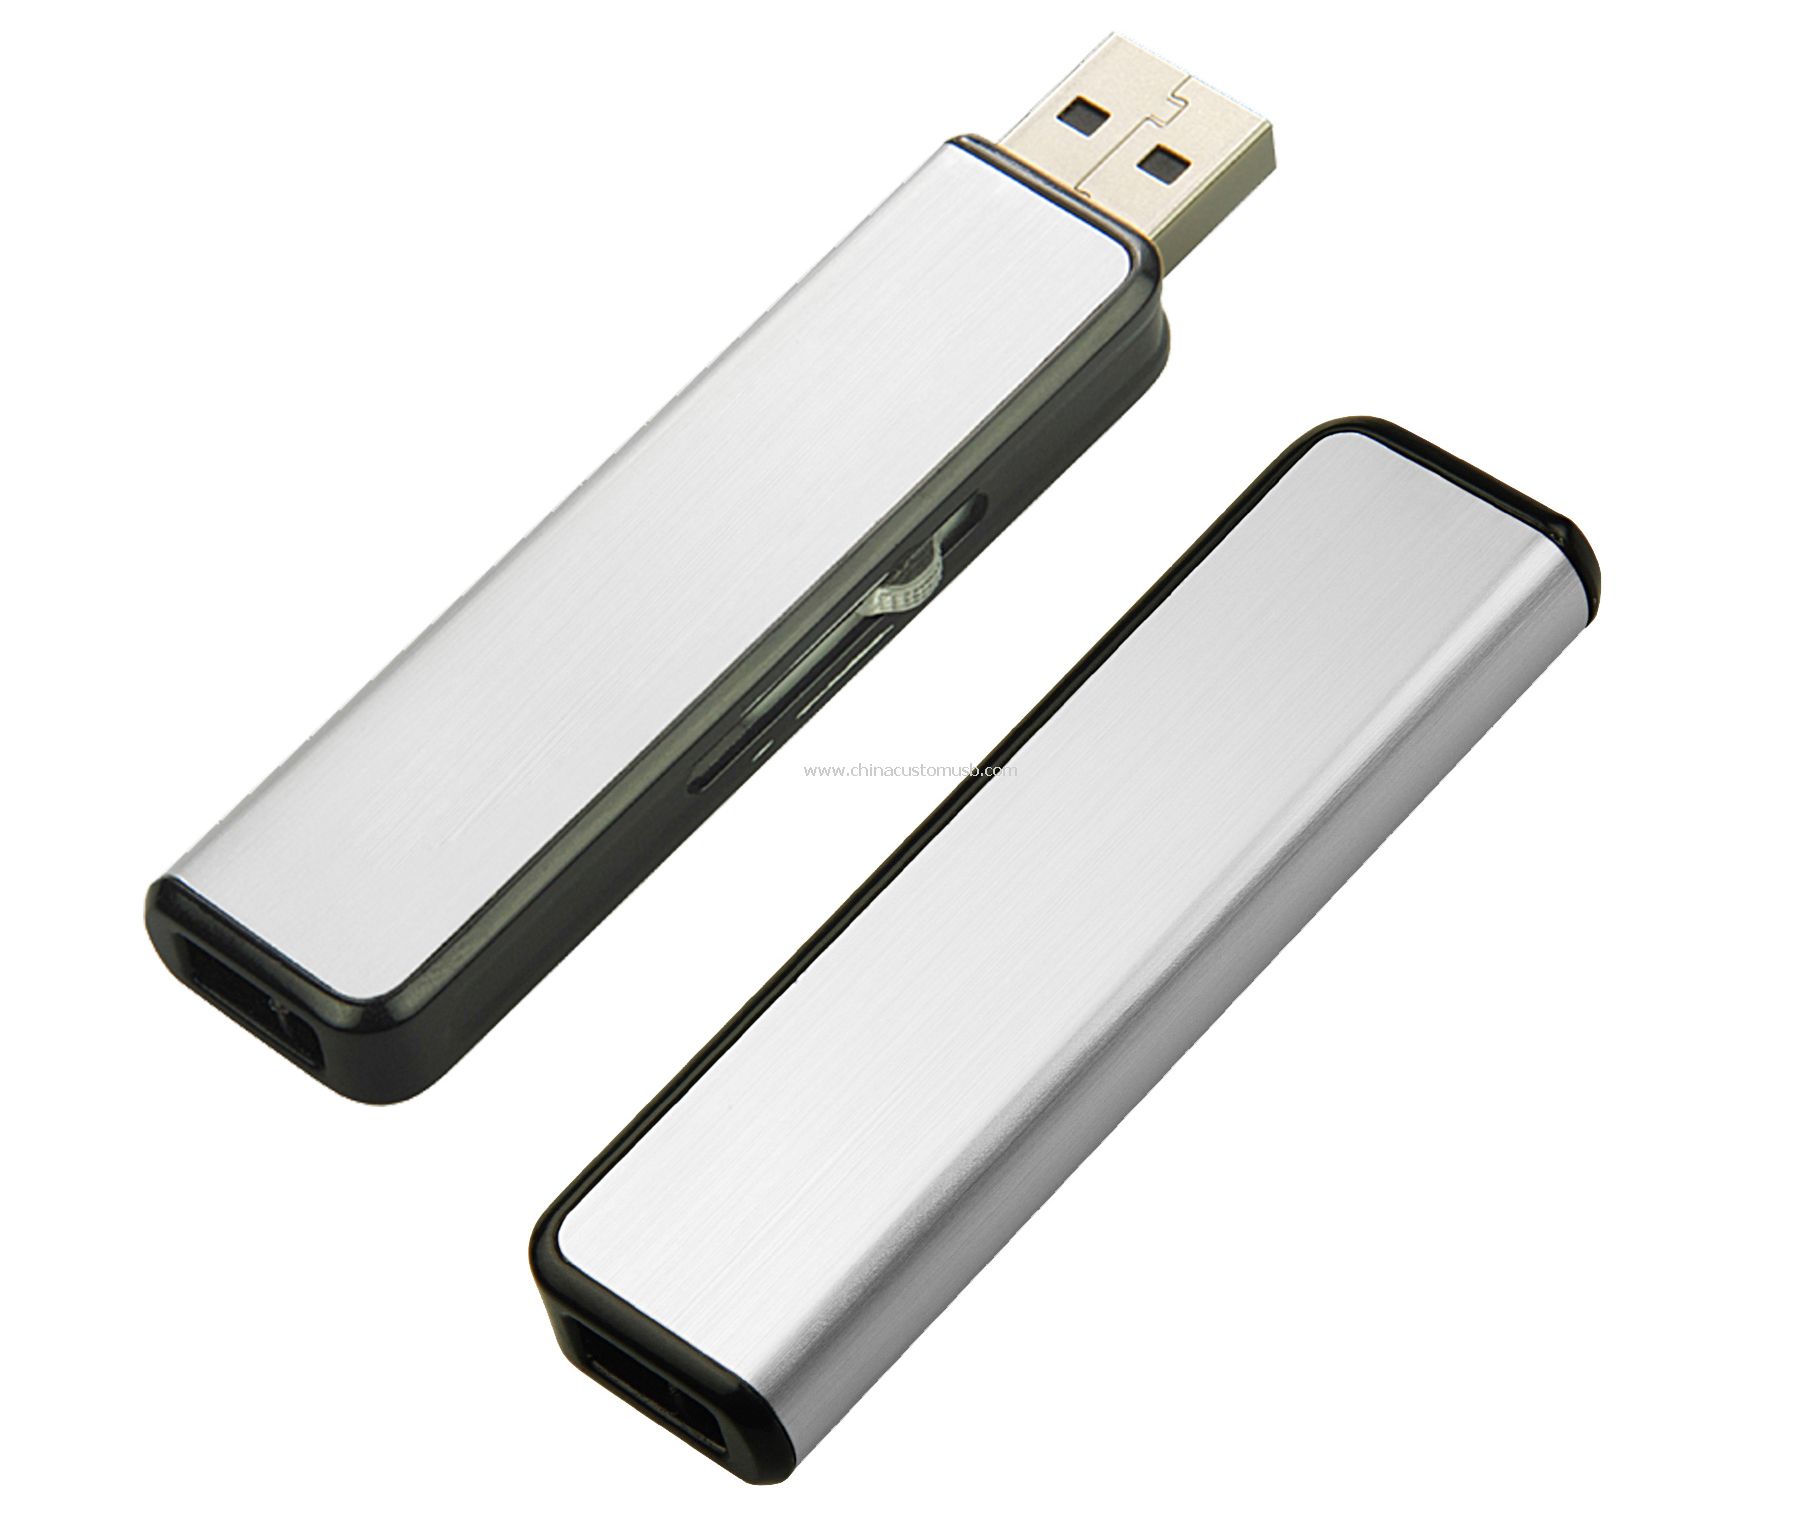 Tekan-tarik USB Drive dengan Aluminium cover